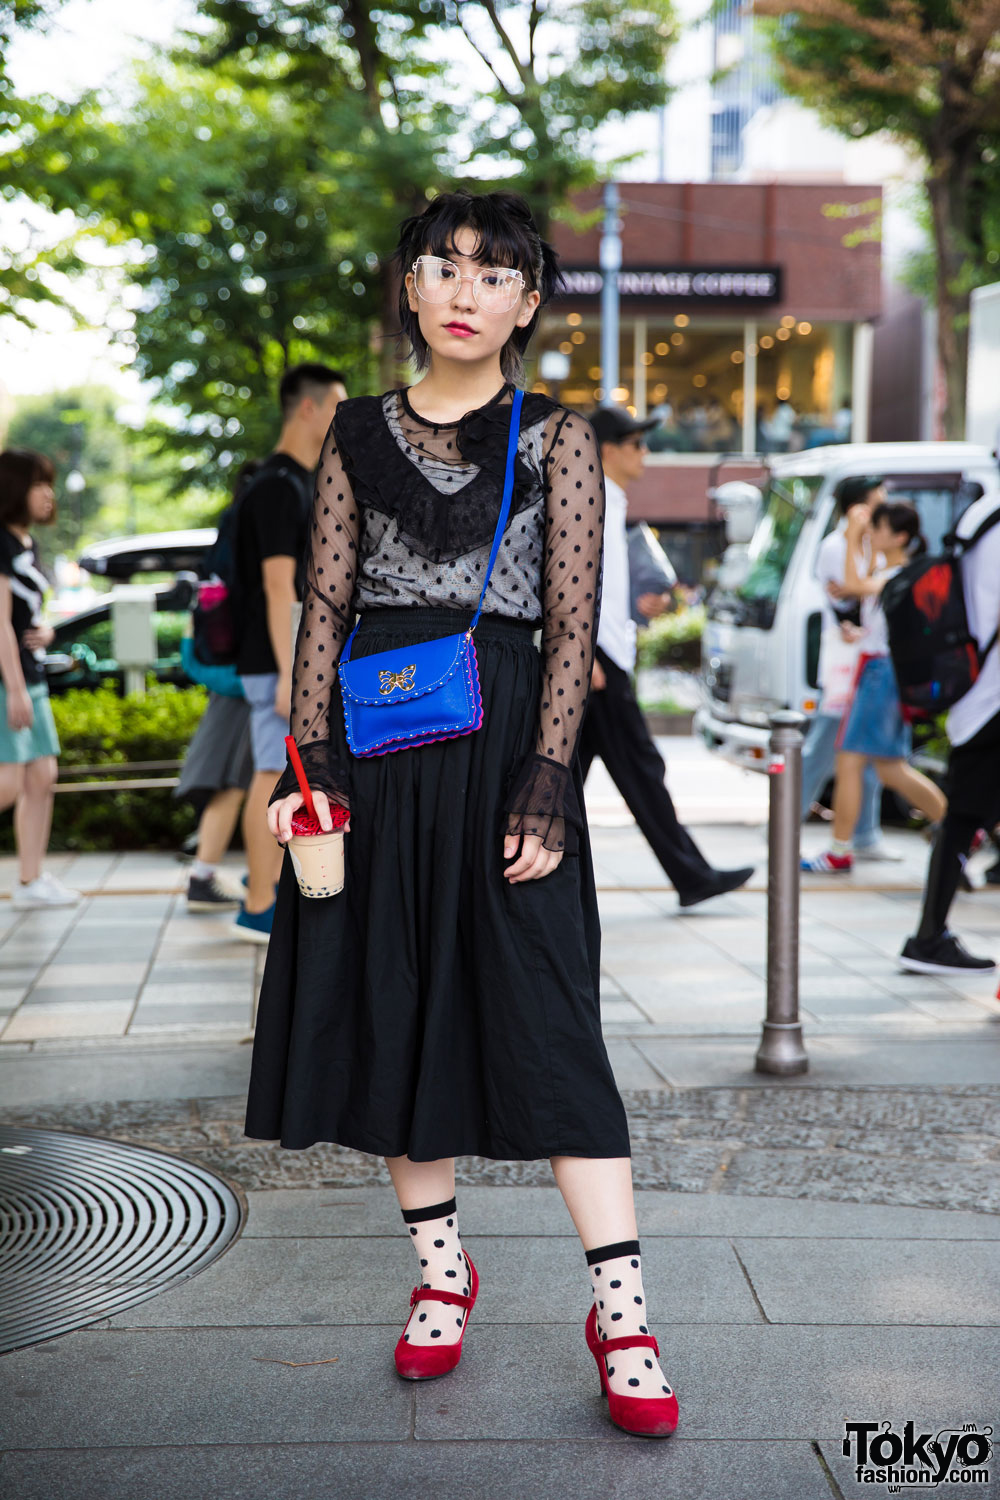 Harajuku Vintage Street Fashion w/ H&M Top, Vintage Midi Skirt, & Baby Doll Shoes